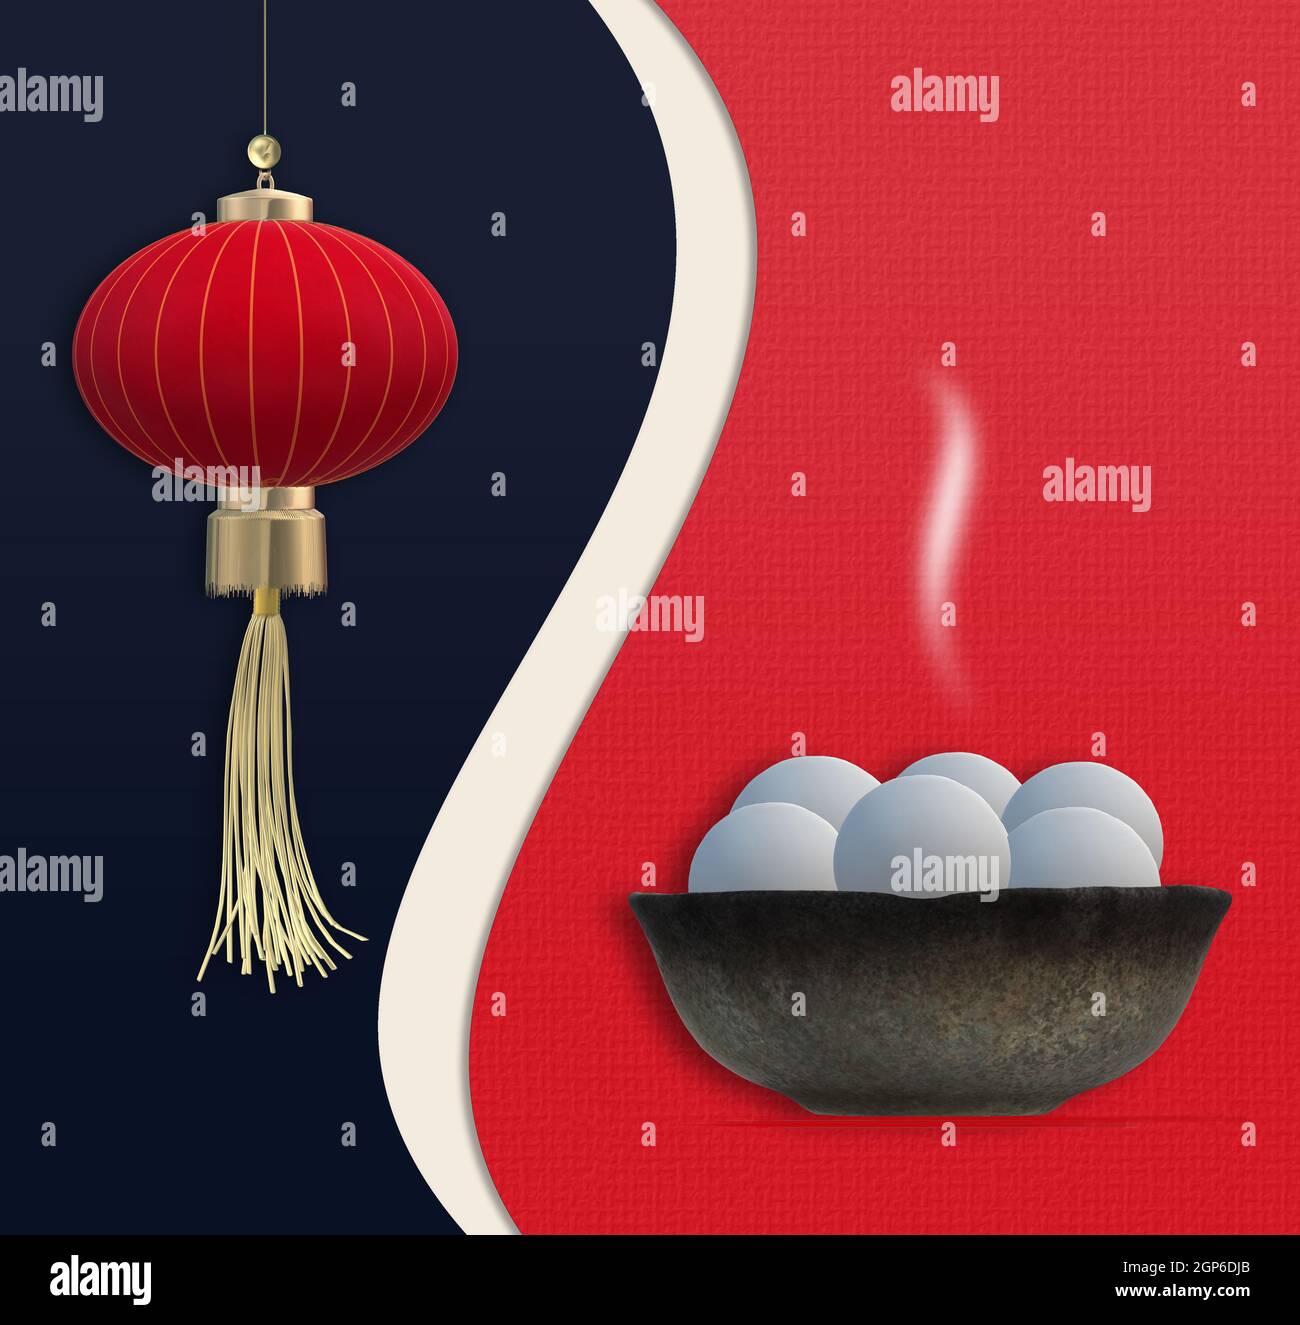 Chinesisches Laternenfest. Chinesisches Neujahr. Speiseknödel in Schüssel, asiatische Laterne. Vorlage für das chinesische Neujahrsfest Laterne. Kopie sp Stockfoto